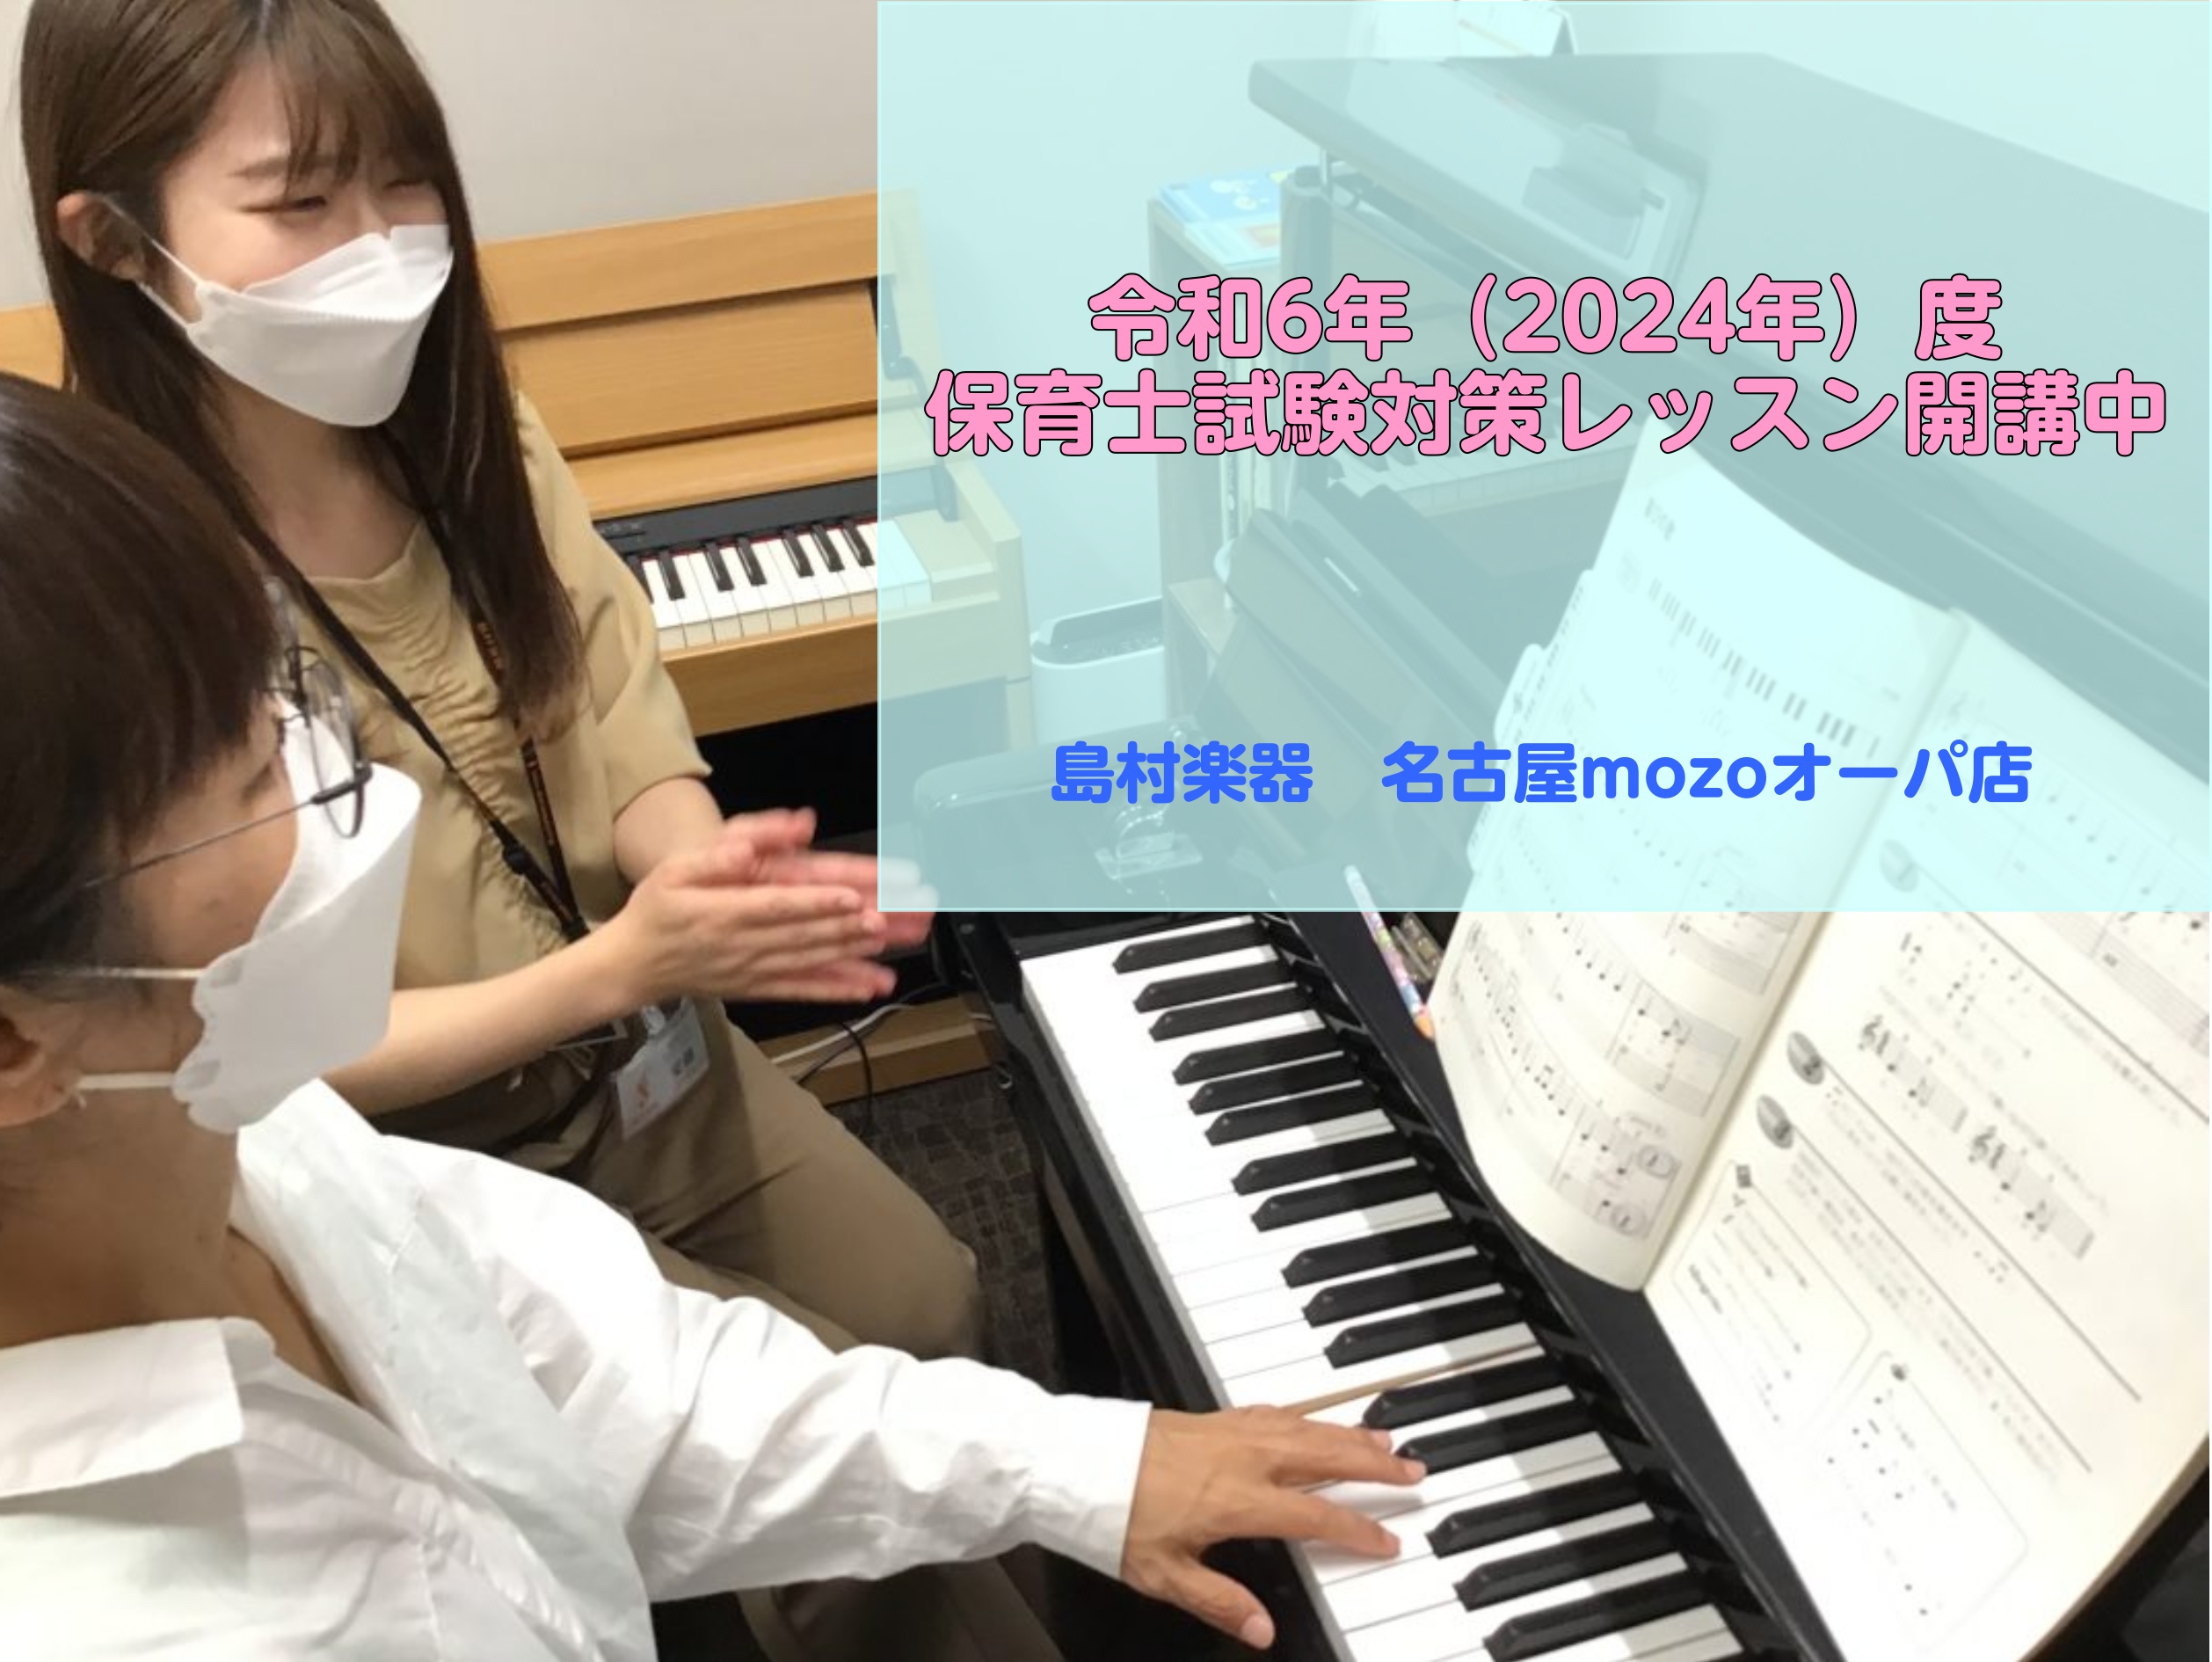 皆様、こんにちは。ピアノインストラクターの安藤百加です！ 島村楽器名古屋mozoオーパ店では保育士試験受験に向けてのレッスンを行っております。 筆記試験で必要になってくる楽典についてもレッスンを行っておりますのでお気軽にお問い合わせください♪ CONTENTS令和6年度（2024年度）　保育士試験日 […]